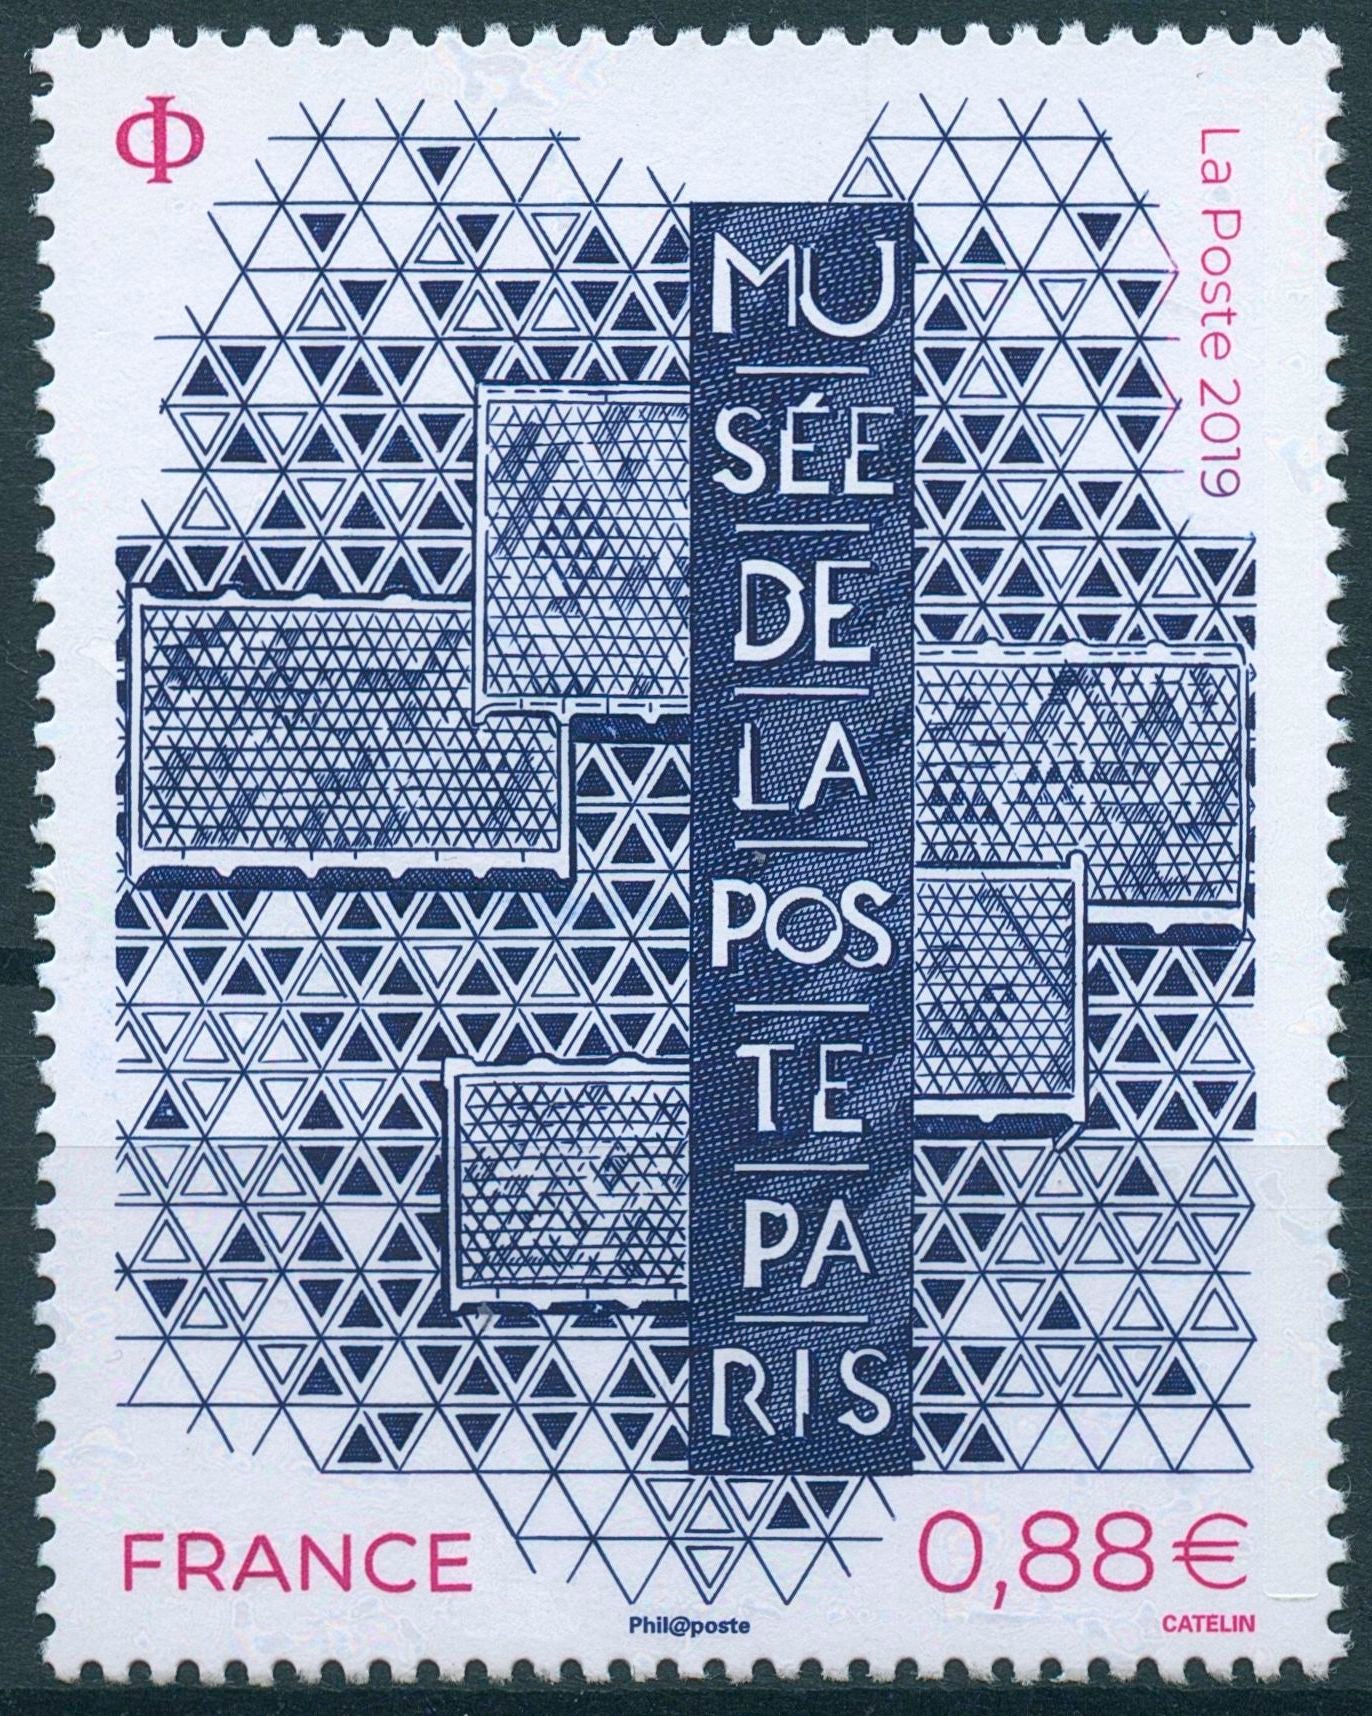 France Stamps 2019 MNH Musee de la Poste Postal Museum History 1v Set